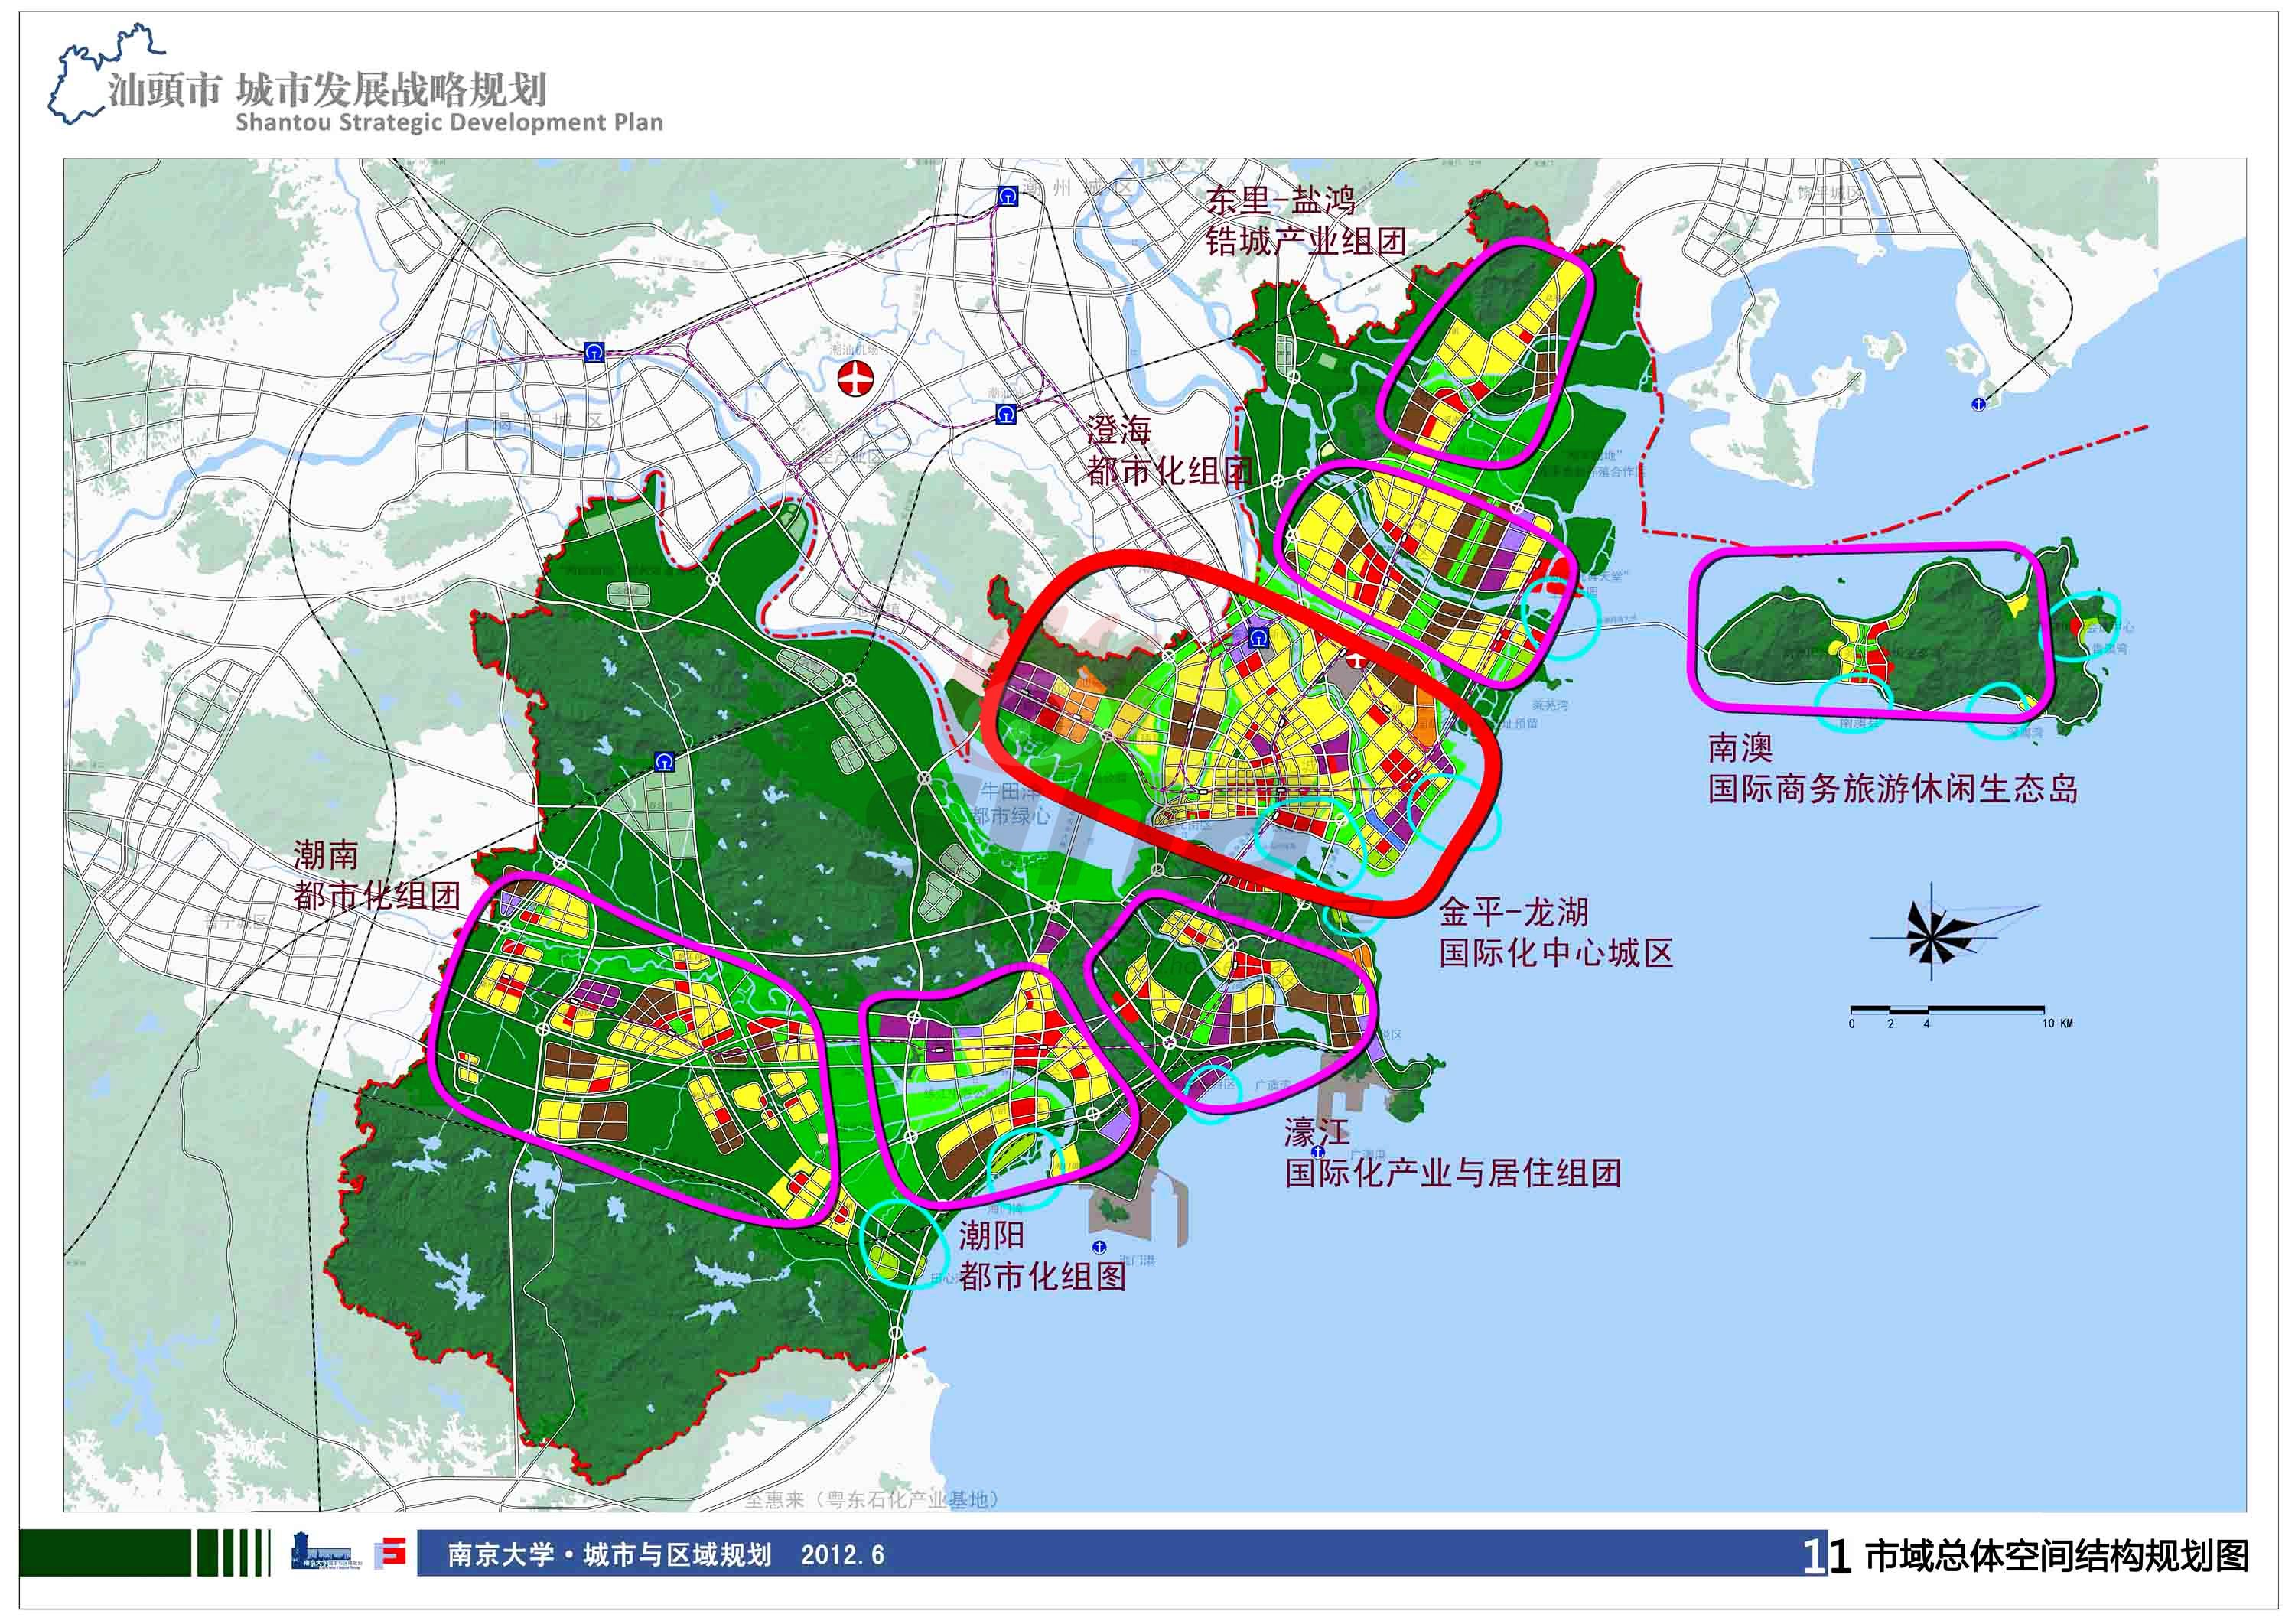 汕头城市发展战略规划综合成果征求意见稿说明(4)